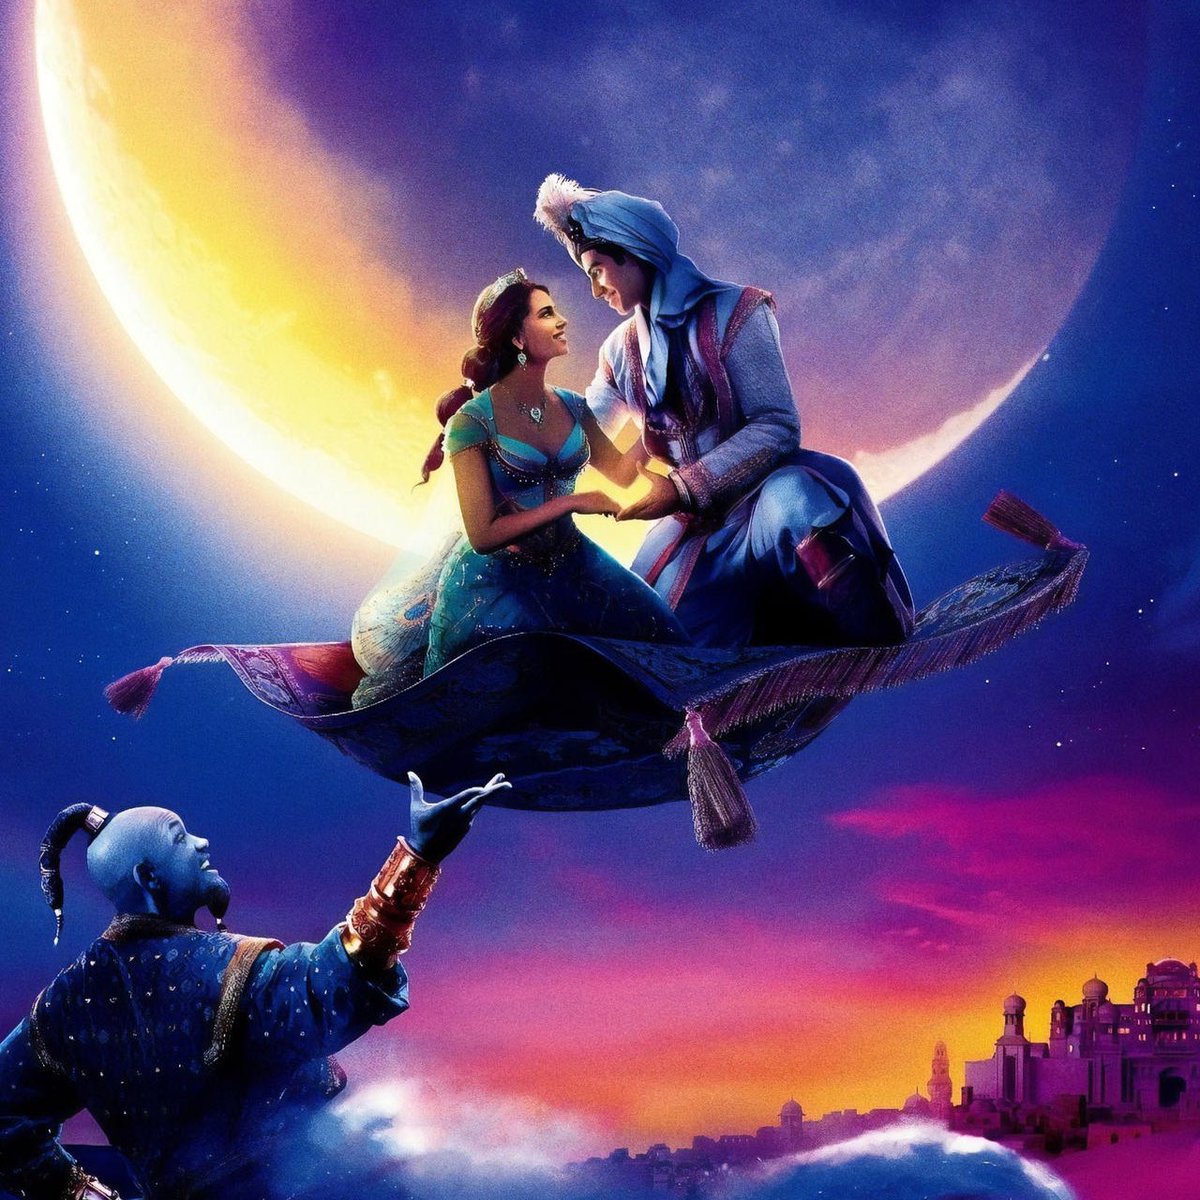 الفيلم الفرعي لـ 'ALADDIN' المركز على الأمير أندرز ما زال قيد التطوير في Disney.
#Aladdin #PrinceAnders #Disney #EmmStone #ElizabethOlsen #BradleyCooper #Maya #DaRedEvil #Echo #Disney #ZENDAYA #SydneySweeney #Fighter #JodieComer #Wonka #JennaOrtega  #ScottPilgrim #loki